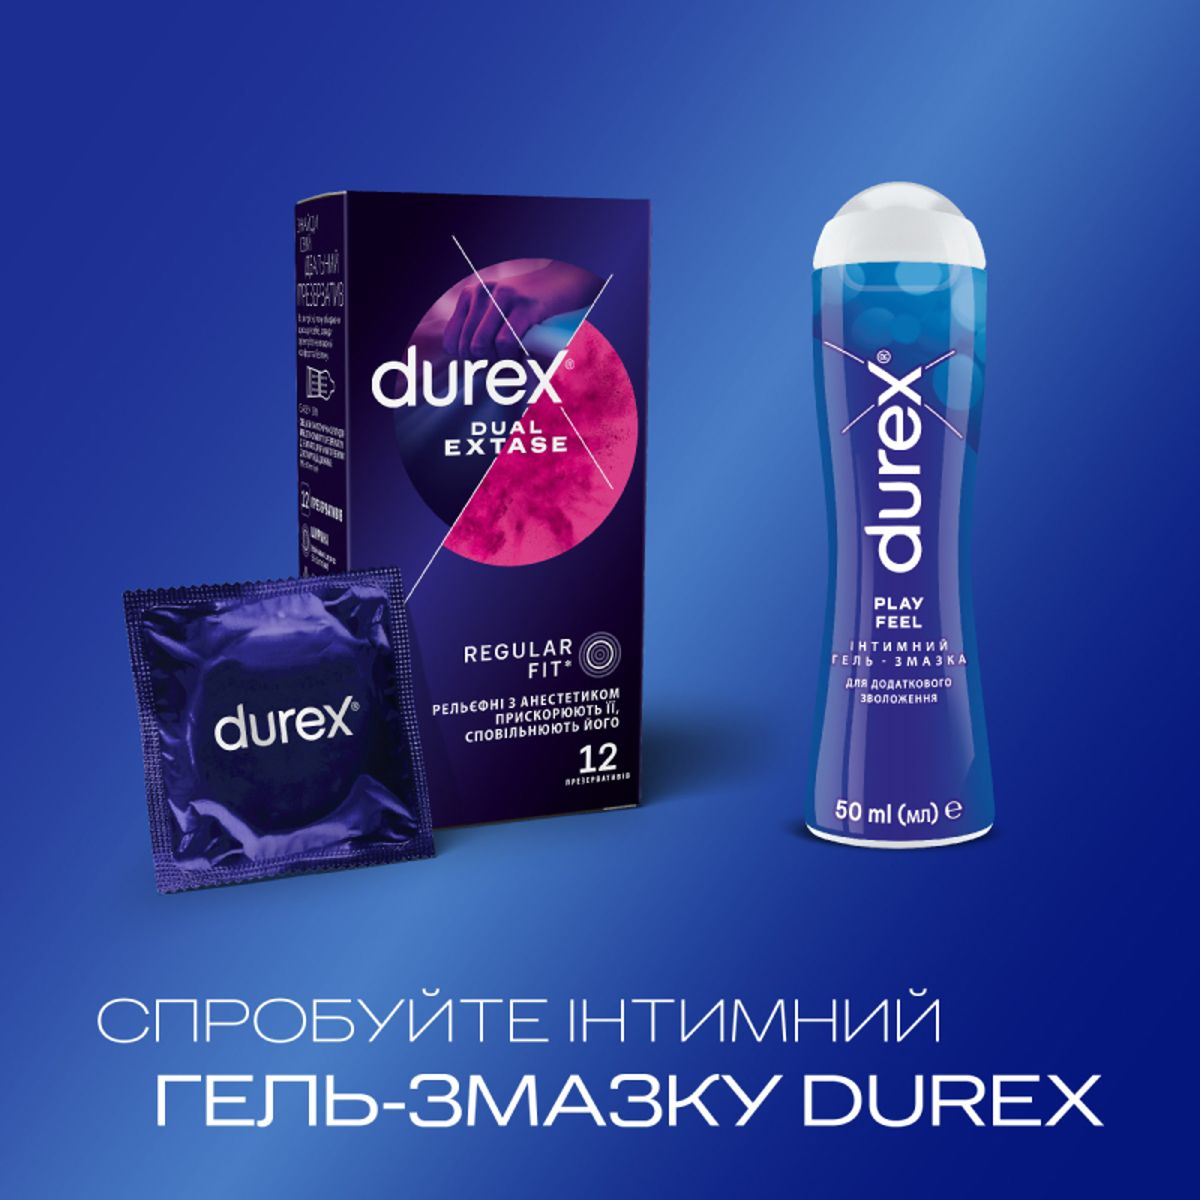 Инструкция Презервативы Durex Dual Extase №12 - купить в Аптеке Низких Цен  с доставкой по Украине, цена, инструкция, аналоги, отзывы